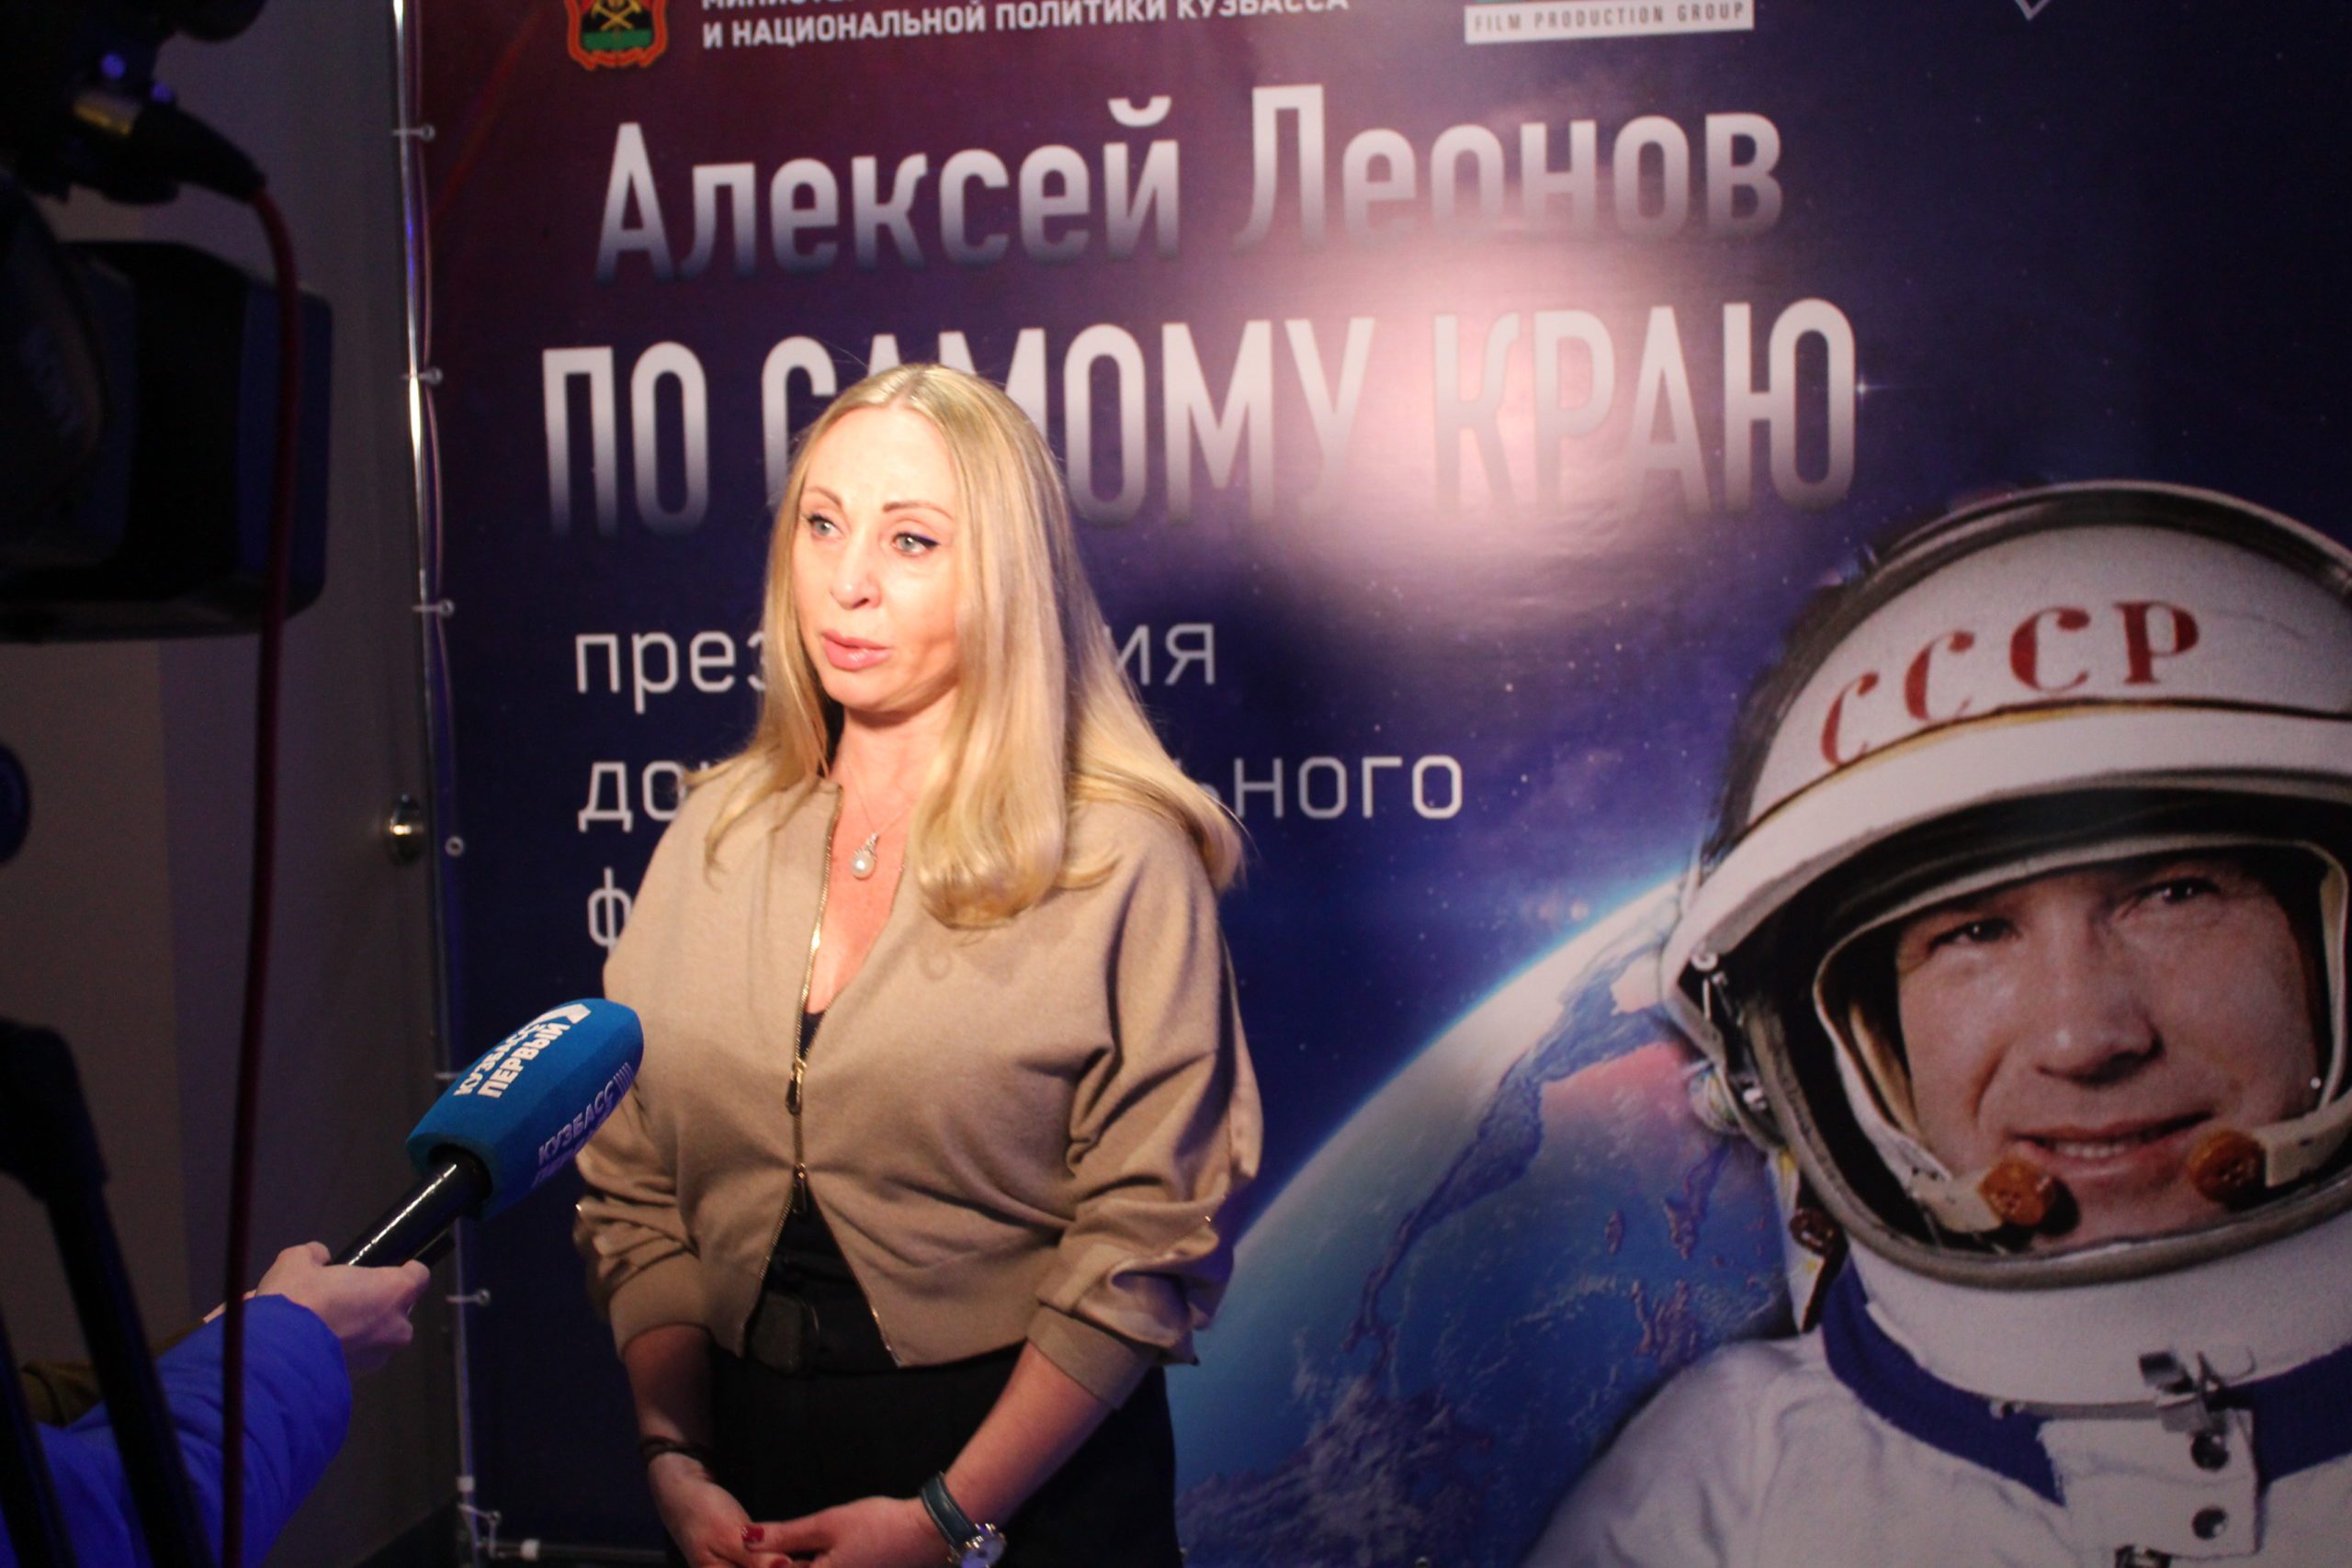 В Кемерове состоялась премьера документального фильма об Алексее Леонове, его представила дочь легендарного летчика-космонавта